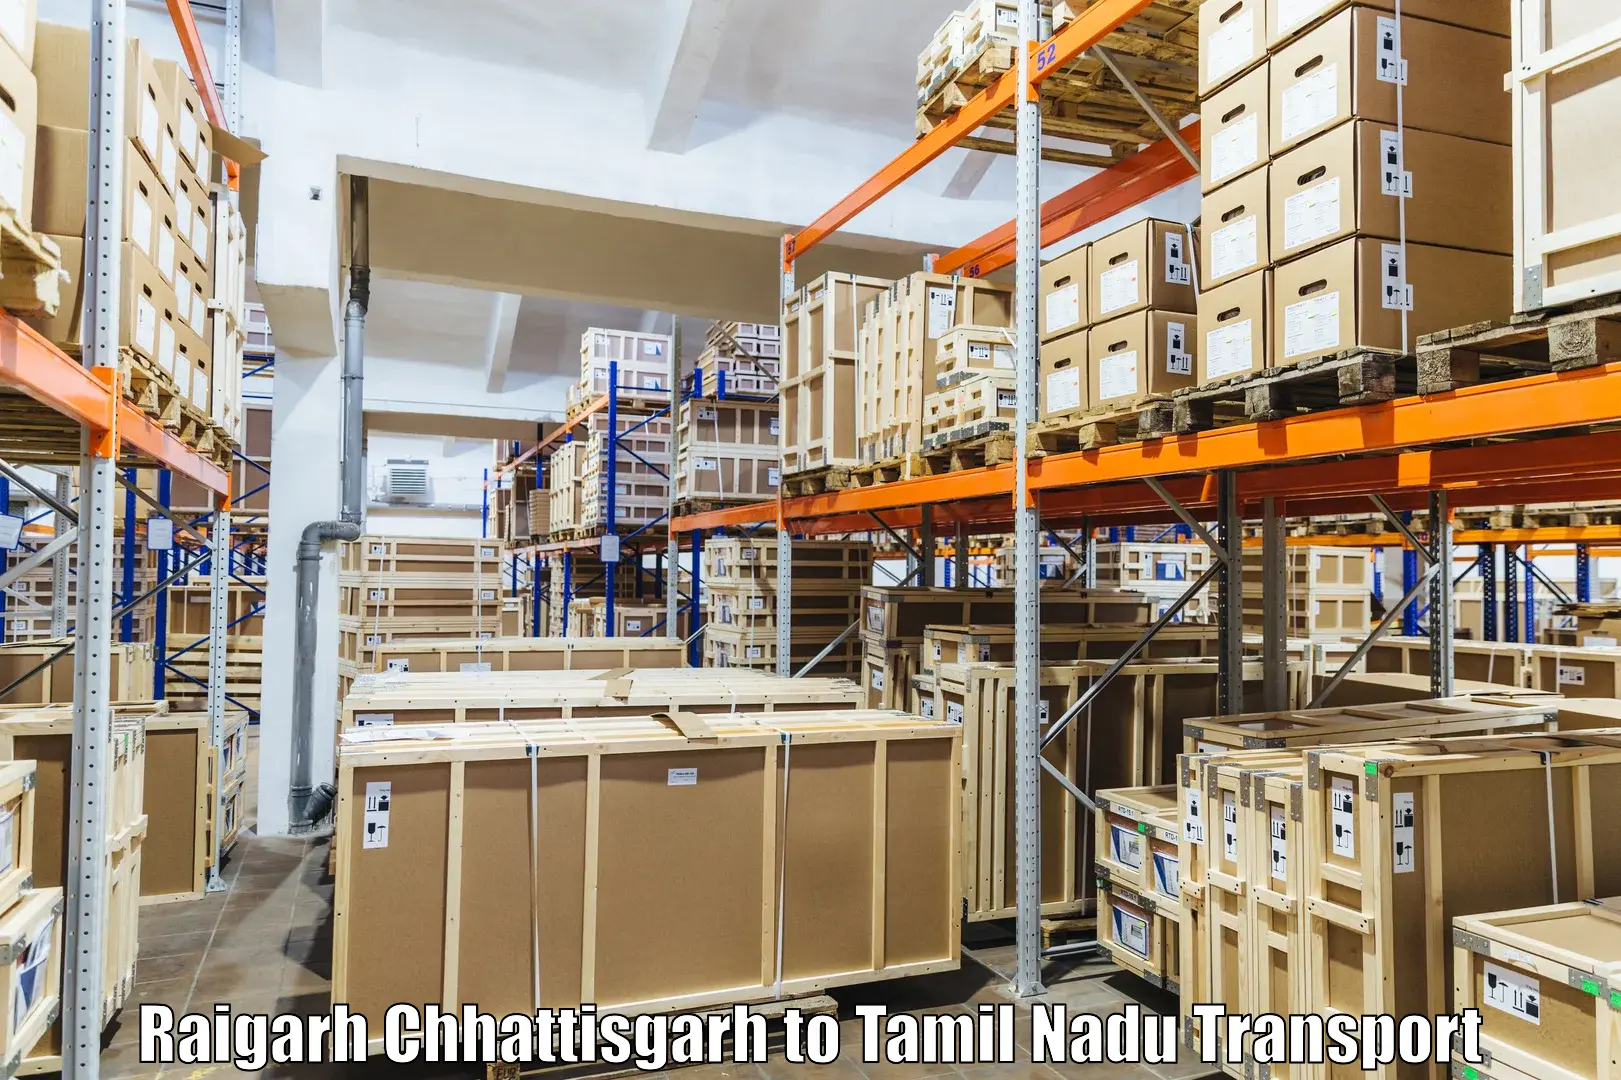 Shipping partner Raigarh Chhattisgarh to Coimbatore